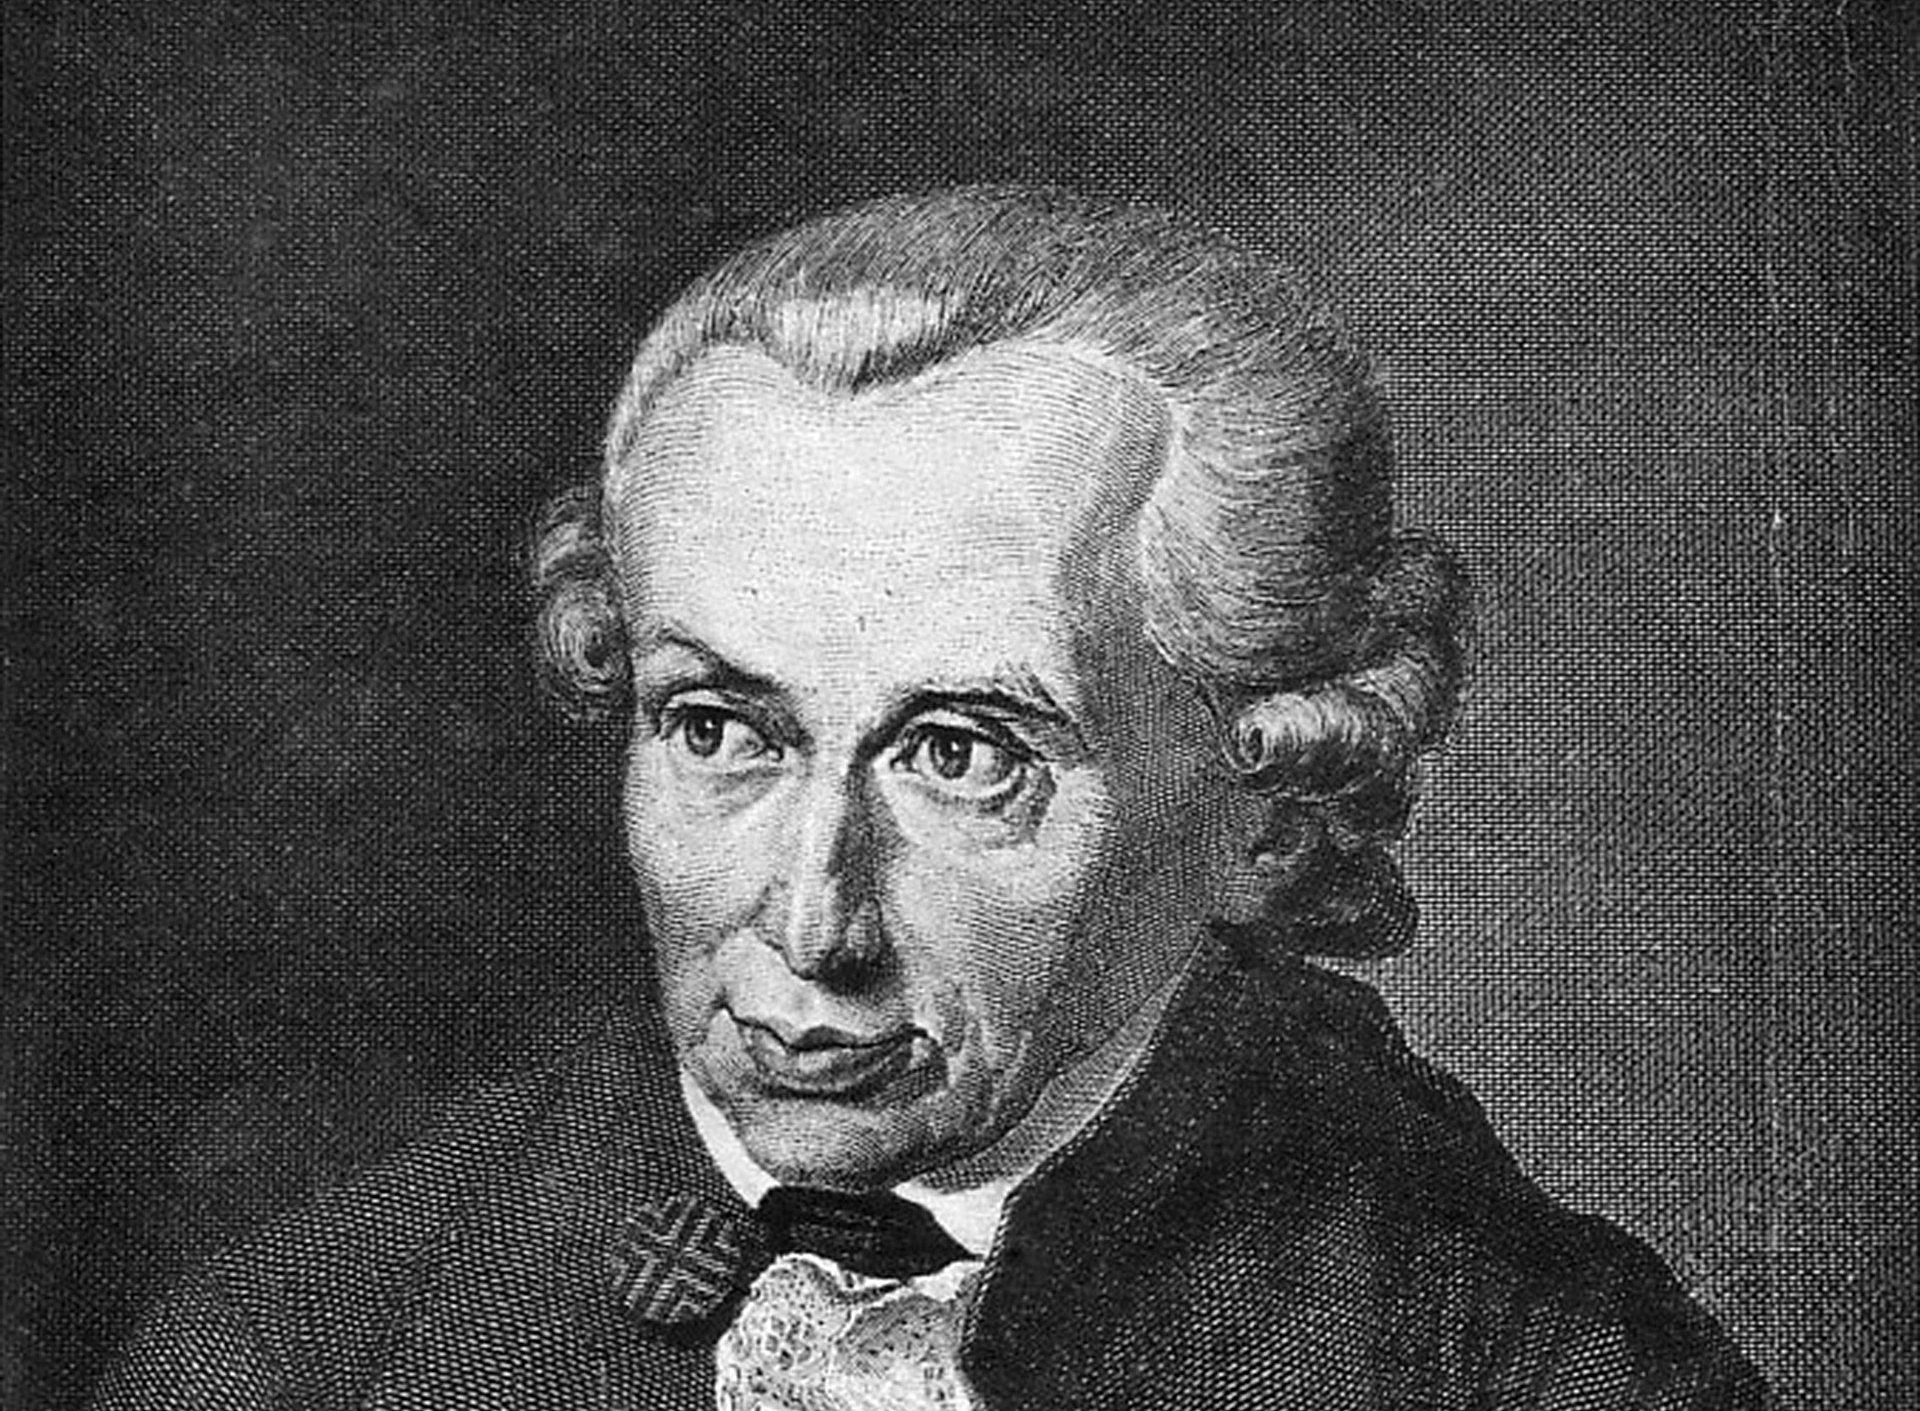 Immanuel Kant mit Perücke, Portrait schwarz-weiß 